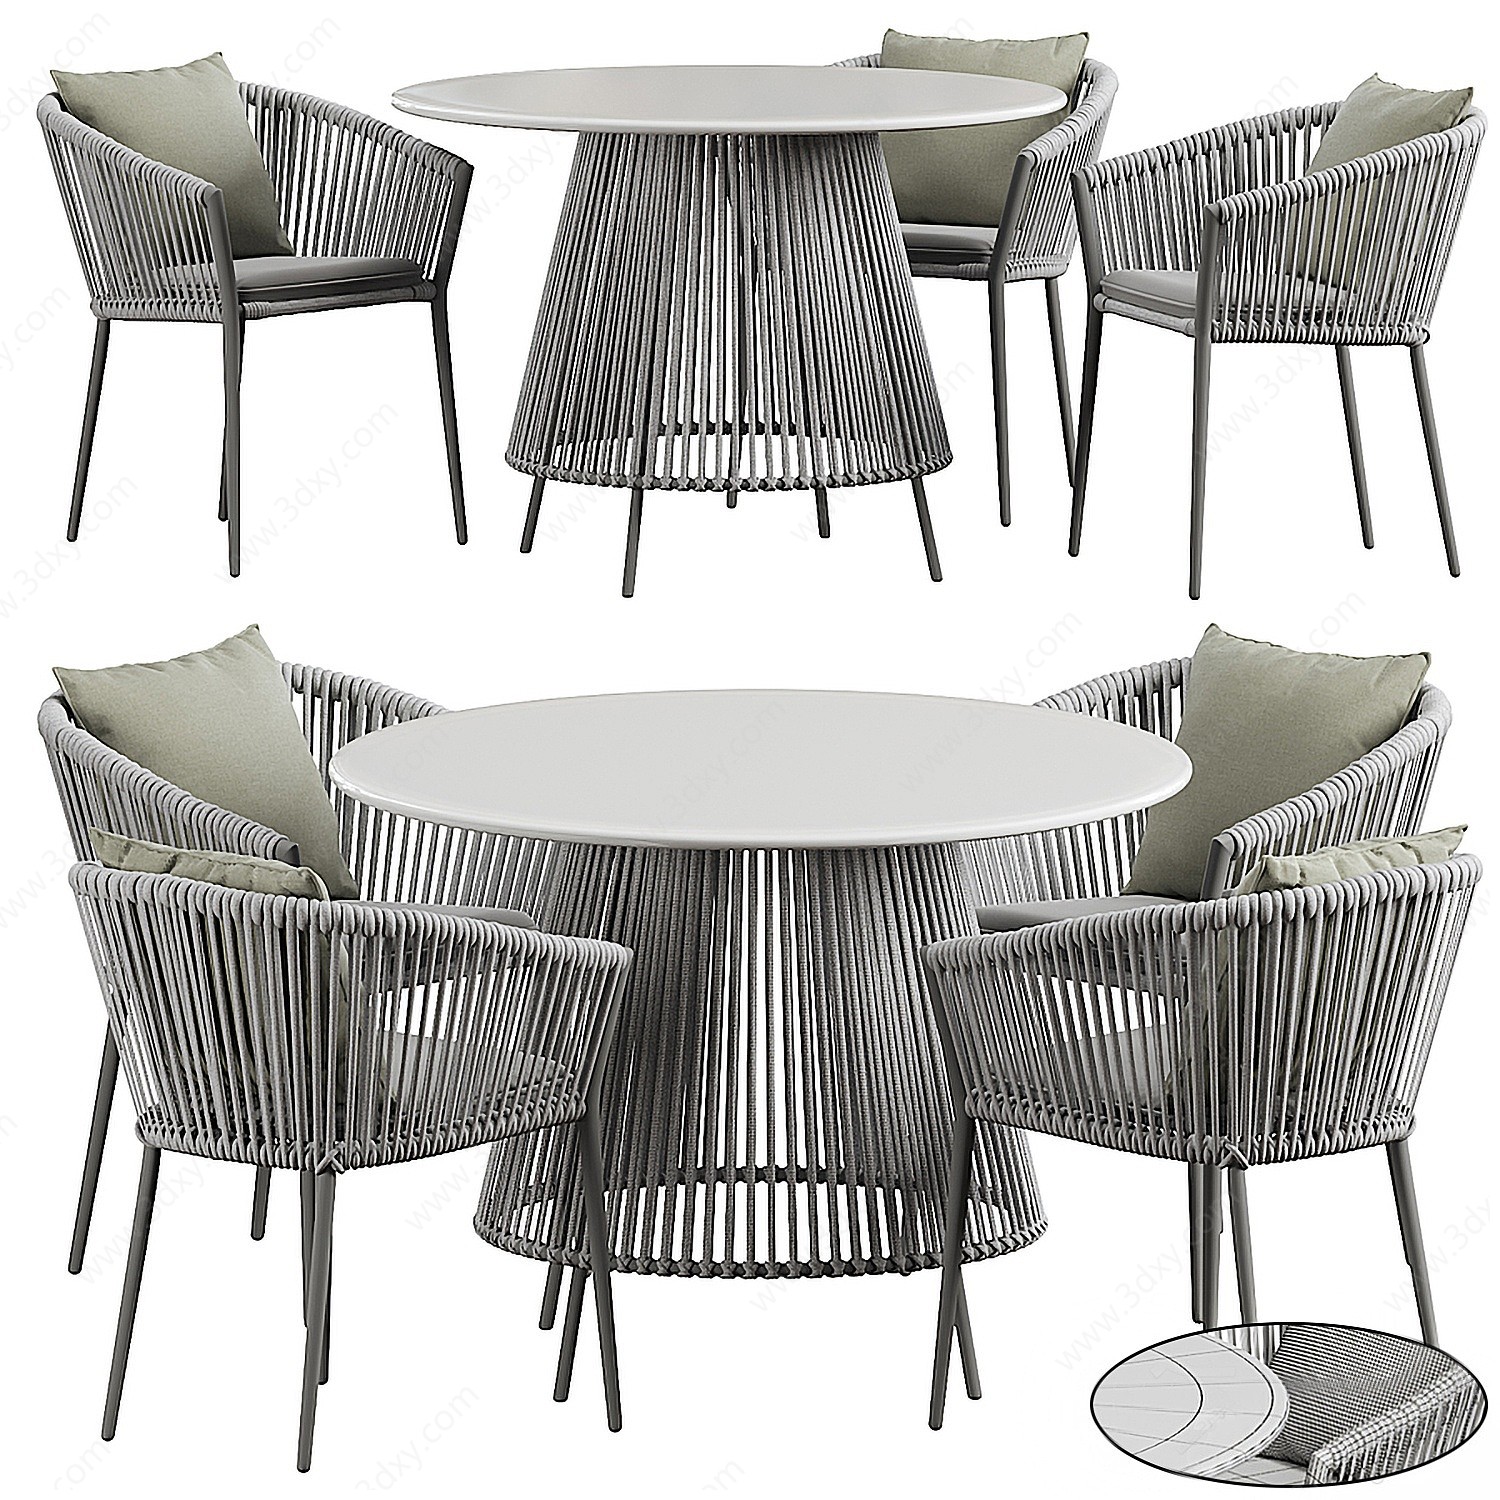 现代户外餐桌椅组合3D模型